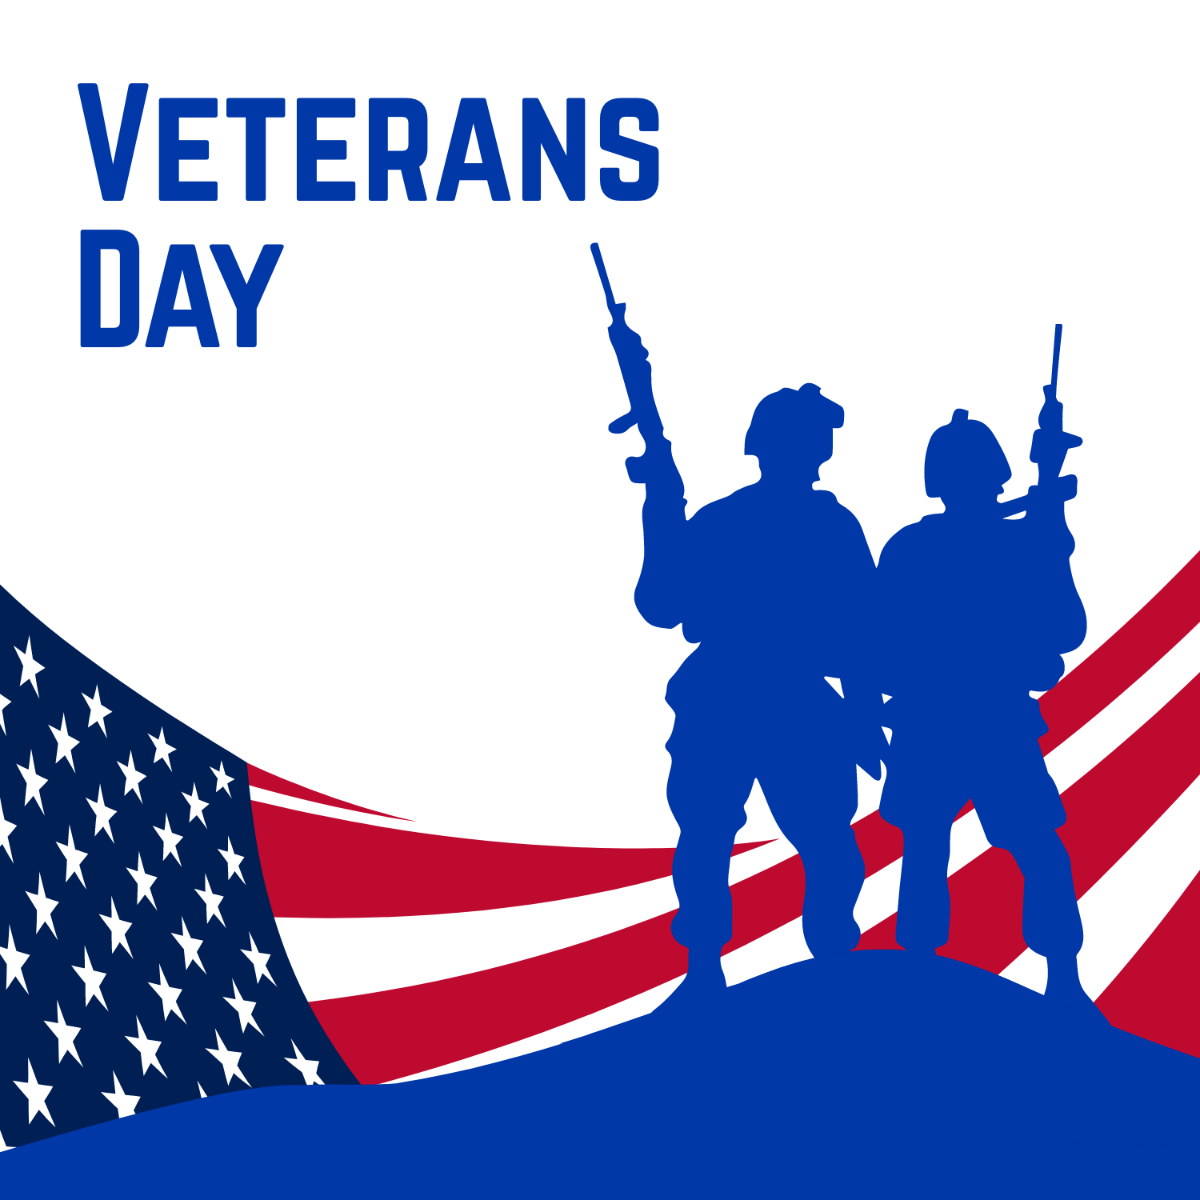 Veterans Day Illustrator Template